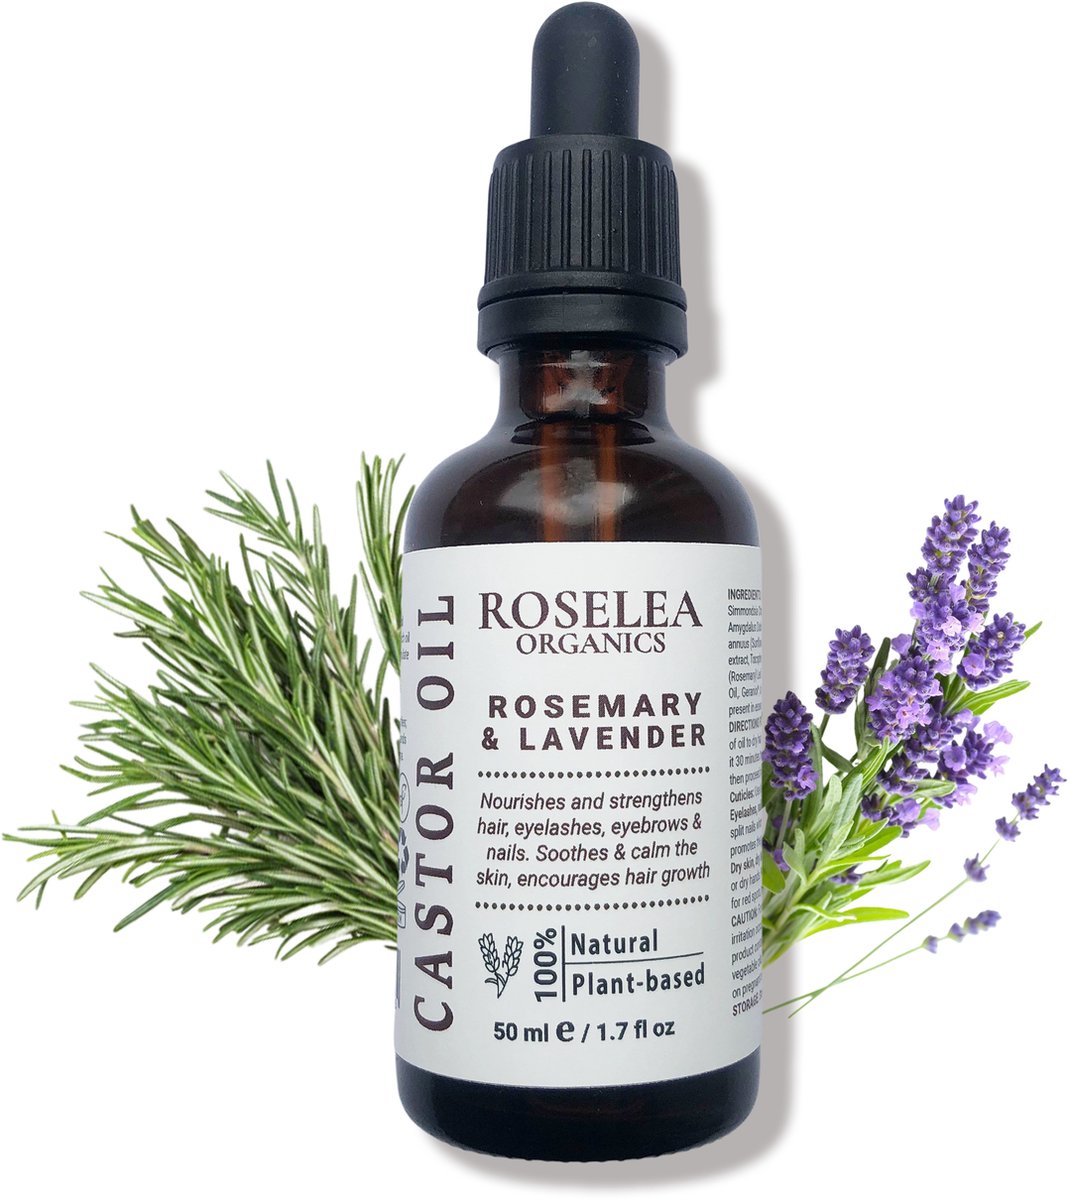 Roselea Organics - Biologische Castorolie met Rozemarijn & Lavendel - Voedt het haar en stimuleert de haargroei. Versterkt haar, wimpers, wenkbrauwen en nagels - 100 % NATUURLIJK - 50 ml